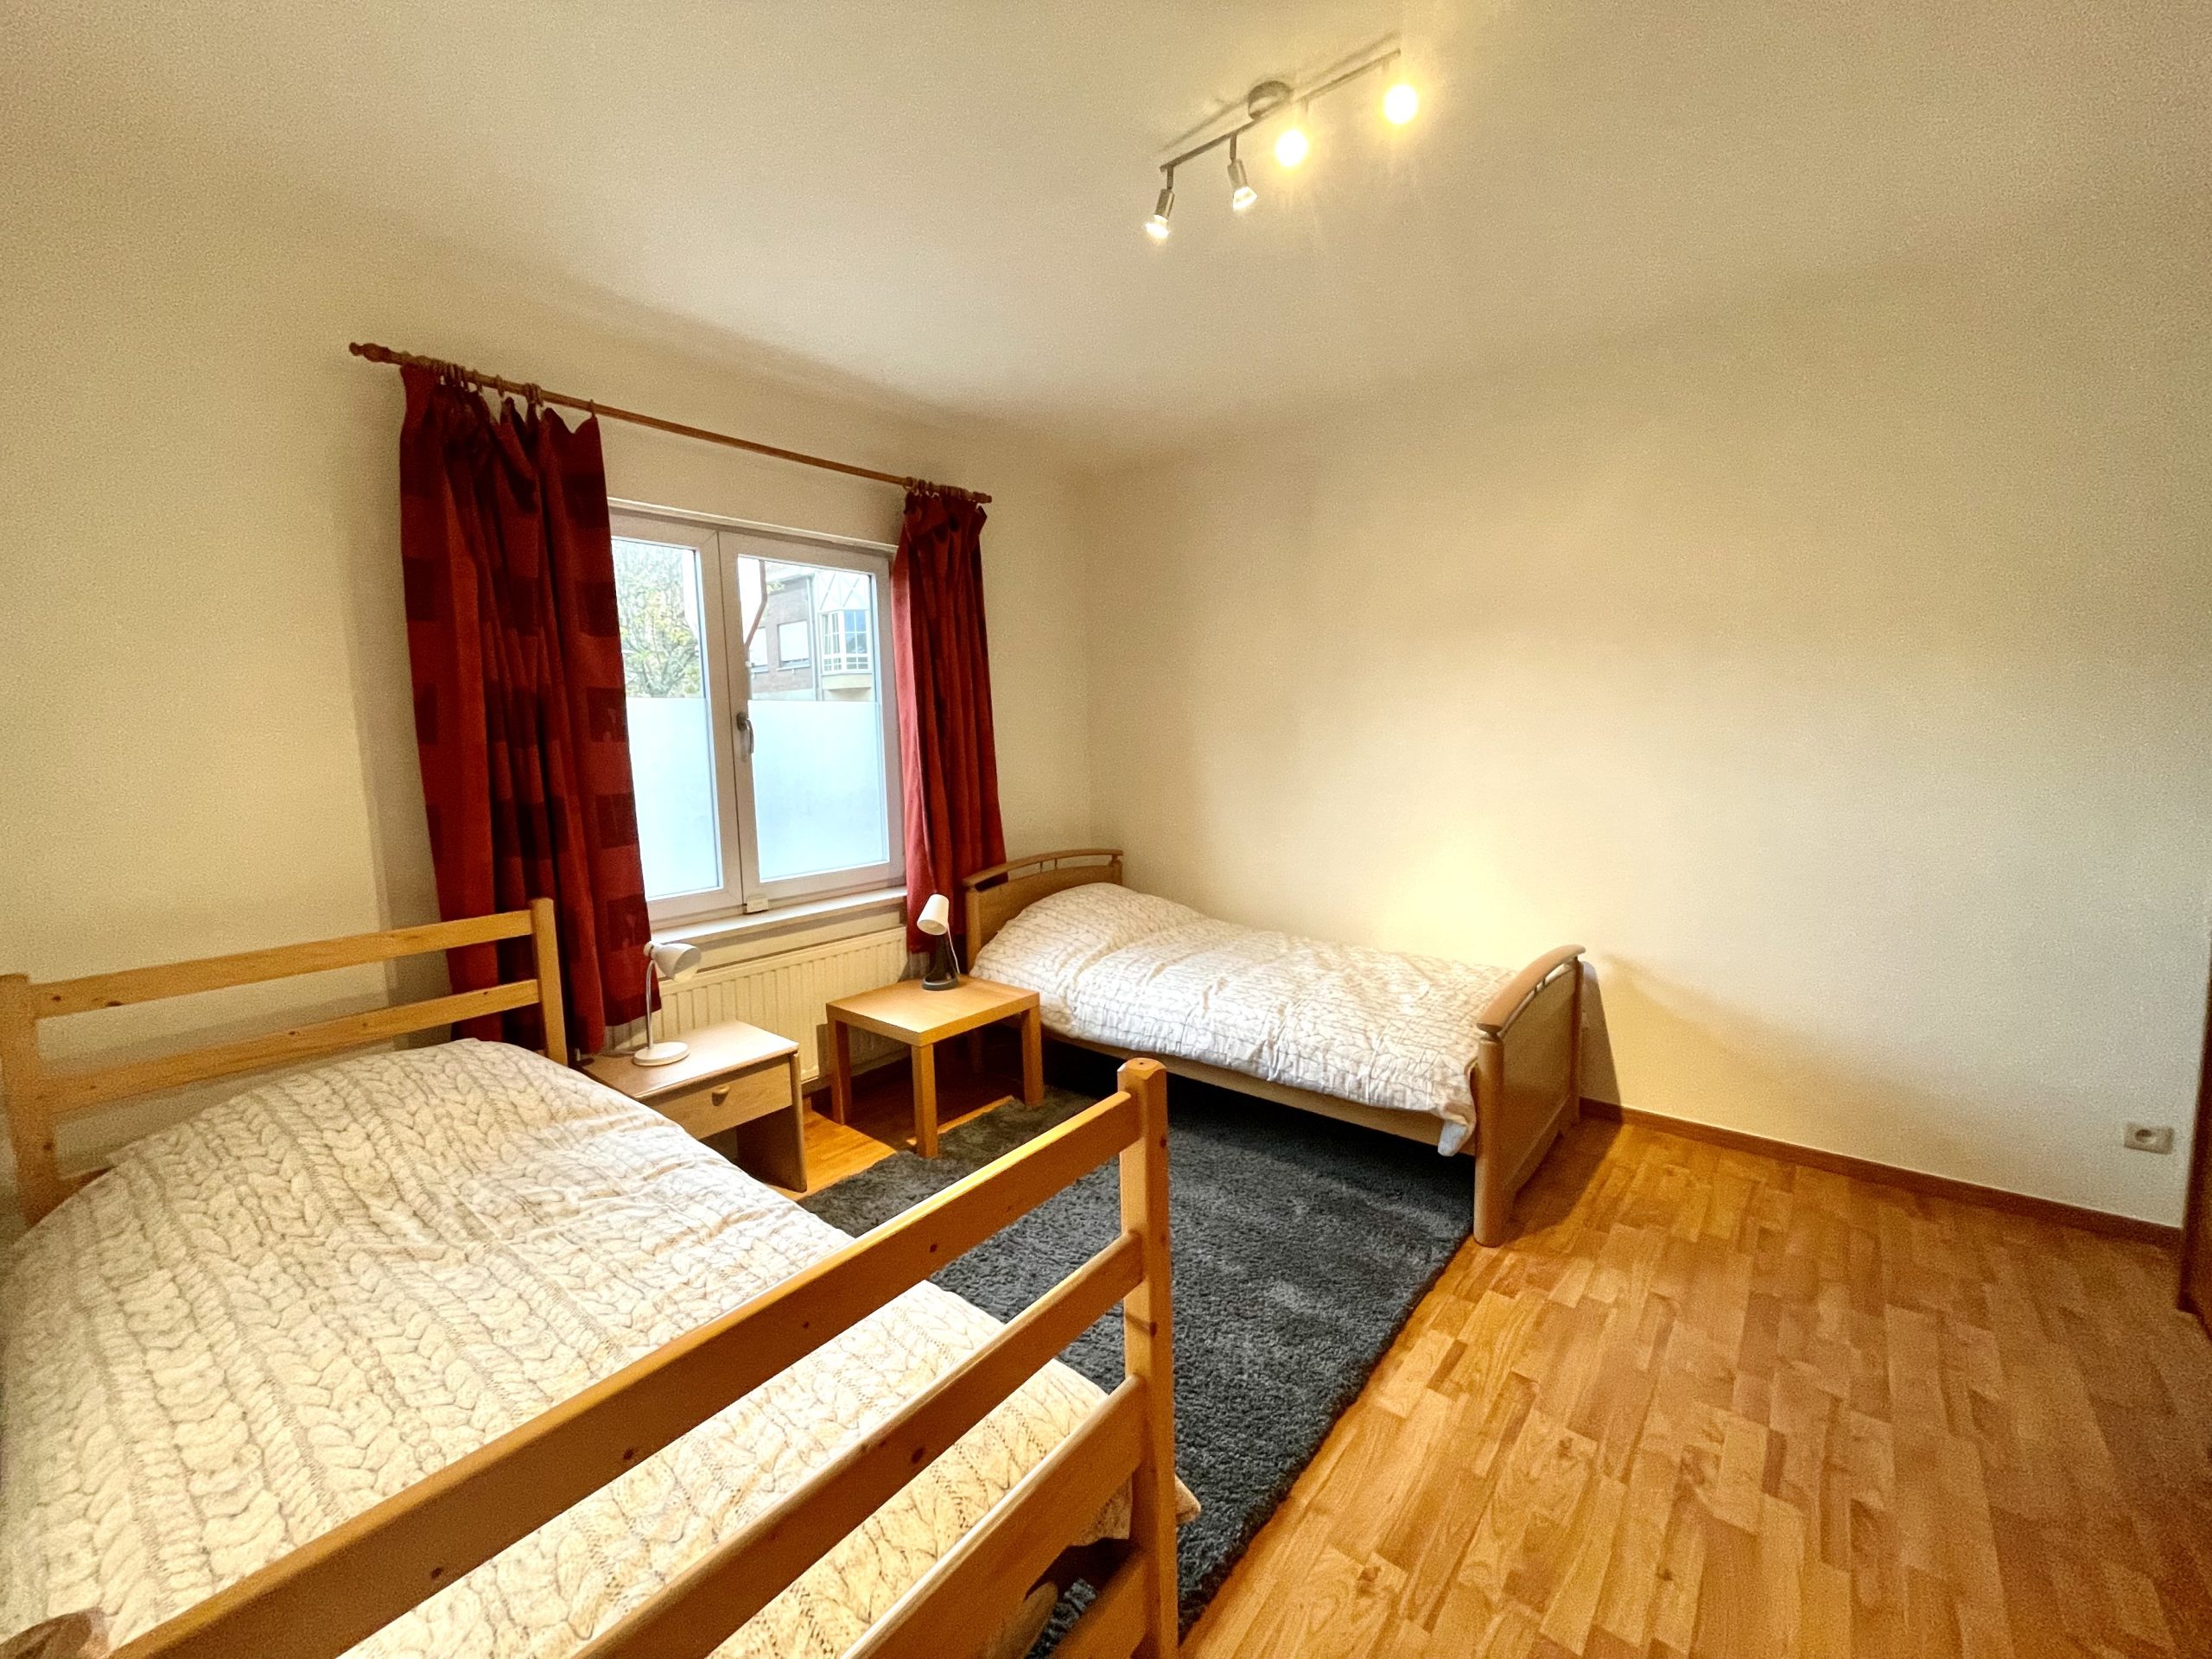 Kieldrecht 16/11 Ground floor – Furnished accommodation for rent near Antwerp